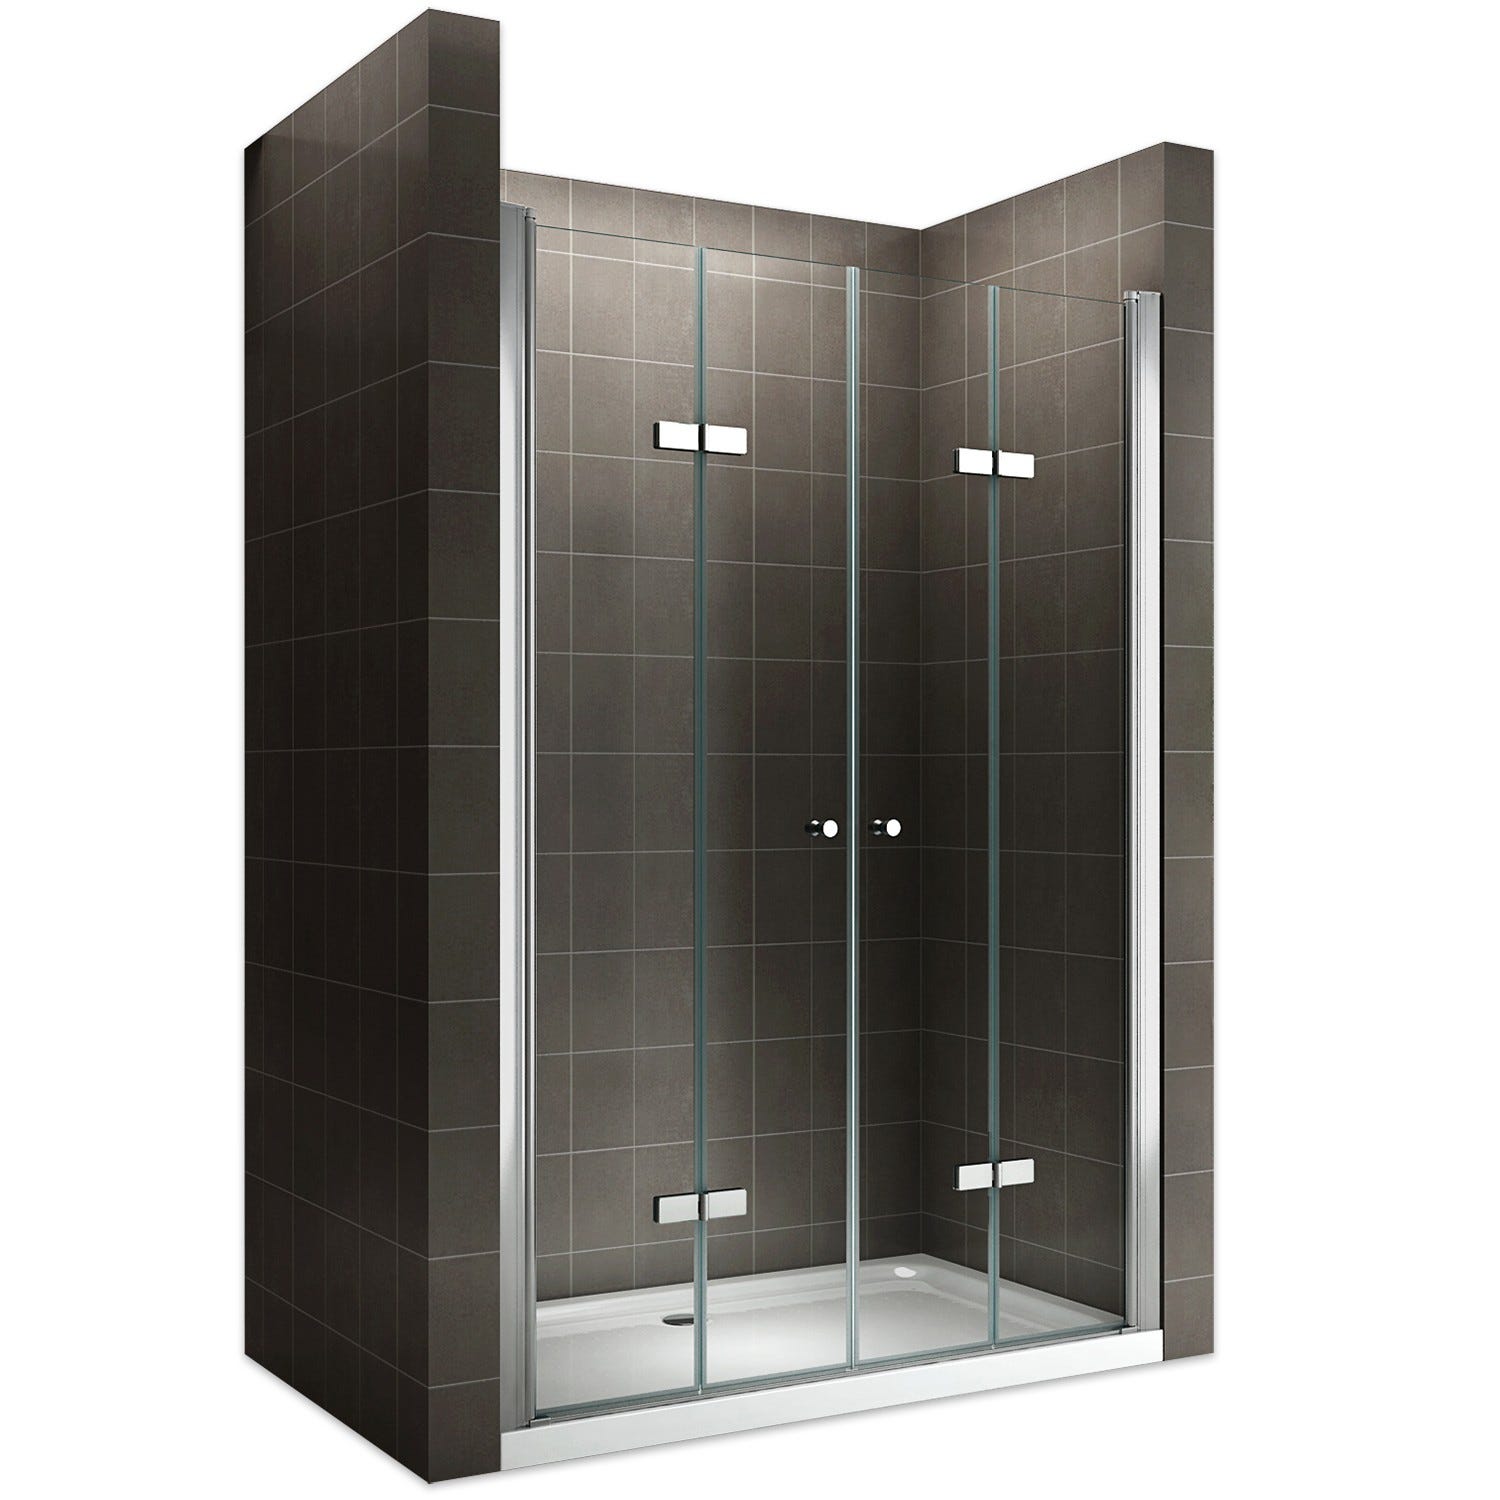 EMMY Porte de douche pliante pivotante H 185 cm largeur réglable 108 à 112 cm verre transparent 0